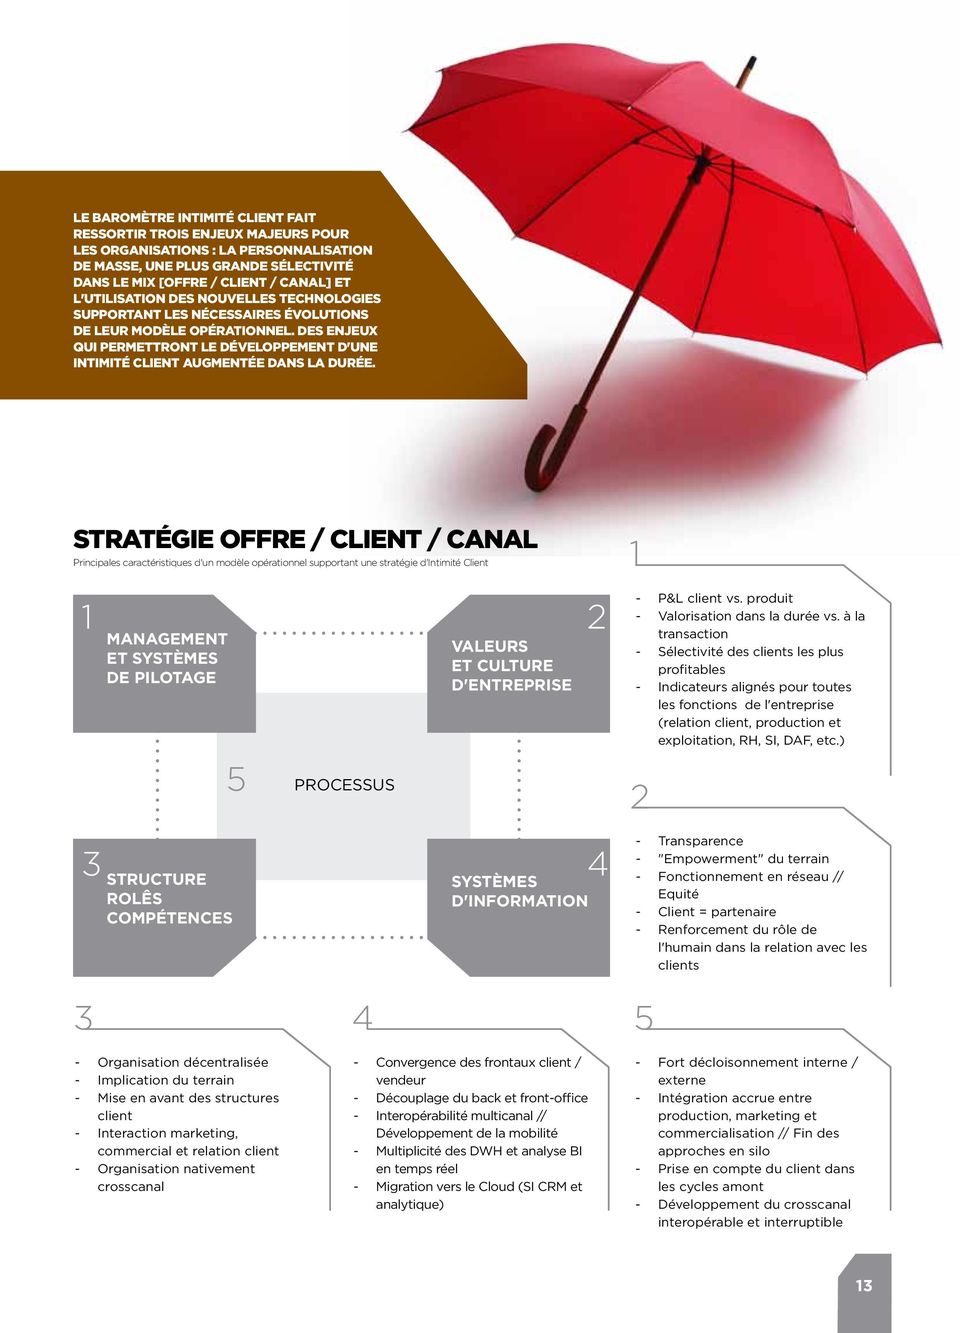 Stratégie offre / client / canal Principales caractéristiques d'un modèle opérationnel supportant une stratégie d'intimité Client 1 2 management et systèmes de pilotage structure rolês Compétences 5